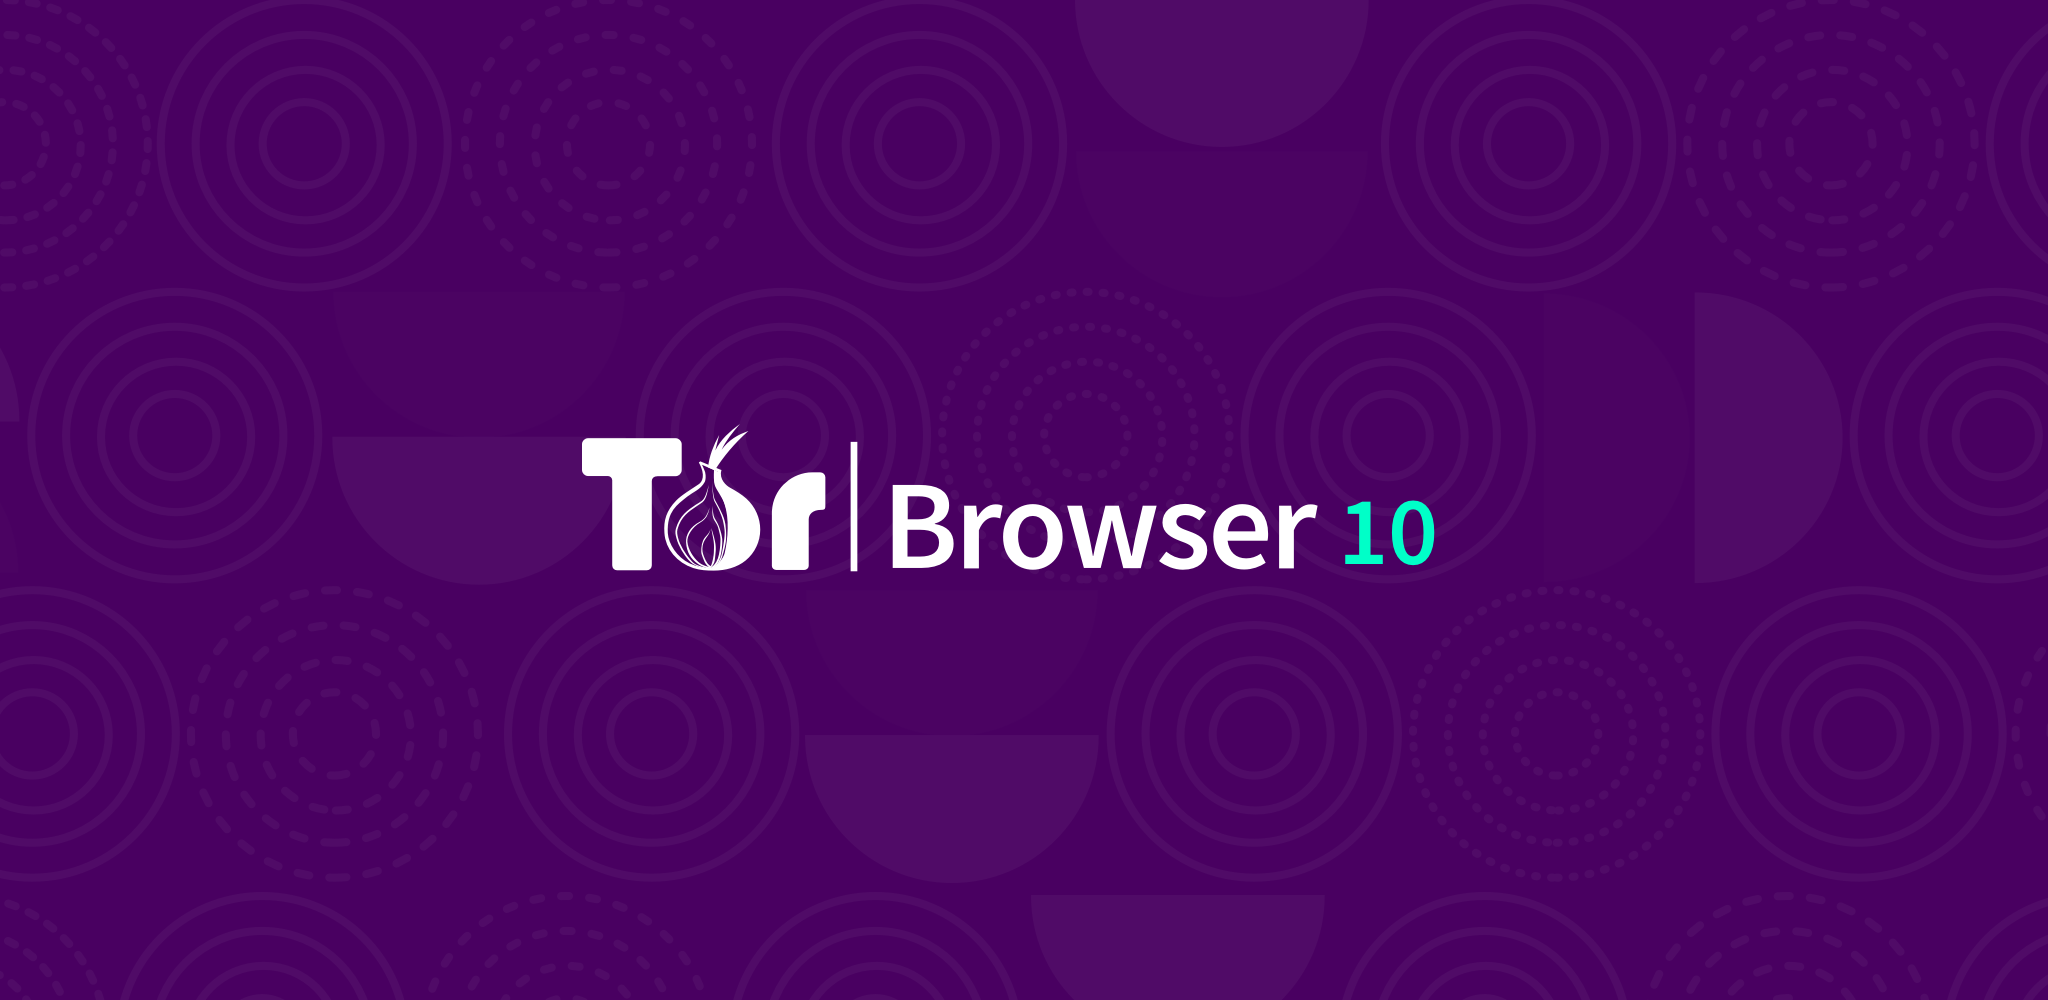 Tor browser 5 mega вход браузер тор скачать на русском для виндовс mega2web